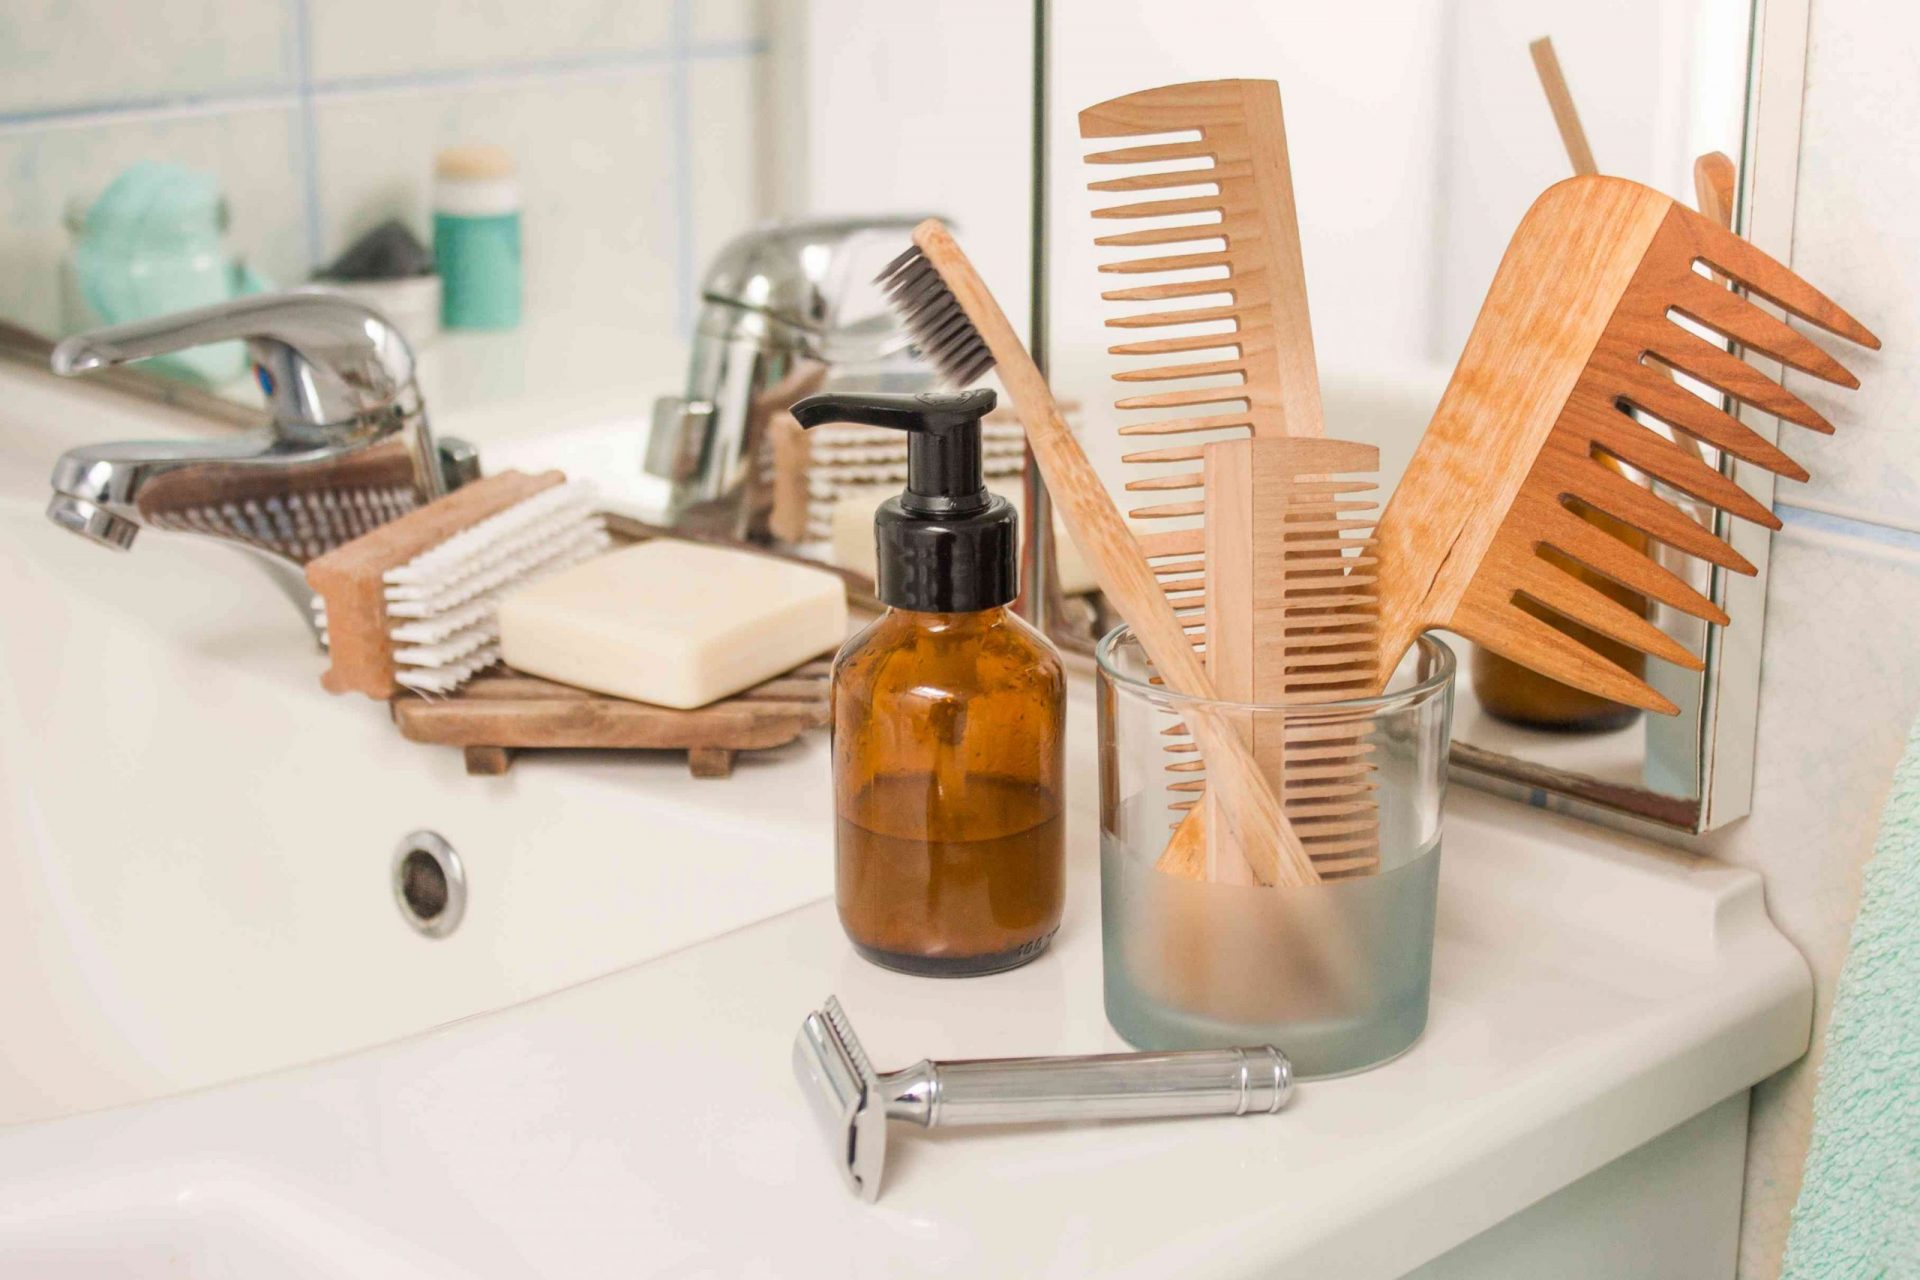 Productos de residuo cero en el mostrador del baño, incluyendo peines de bambú, una maquinilla de afeitar de metal, un cepillo de dientes de bambú, una pastilla de jabón y mucho más